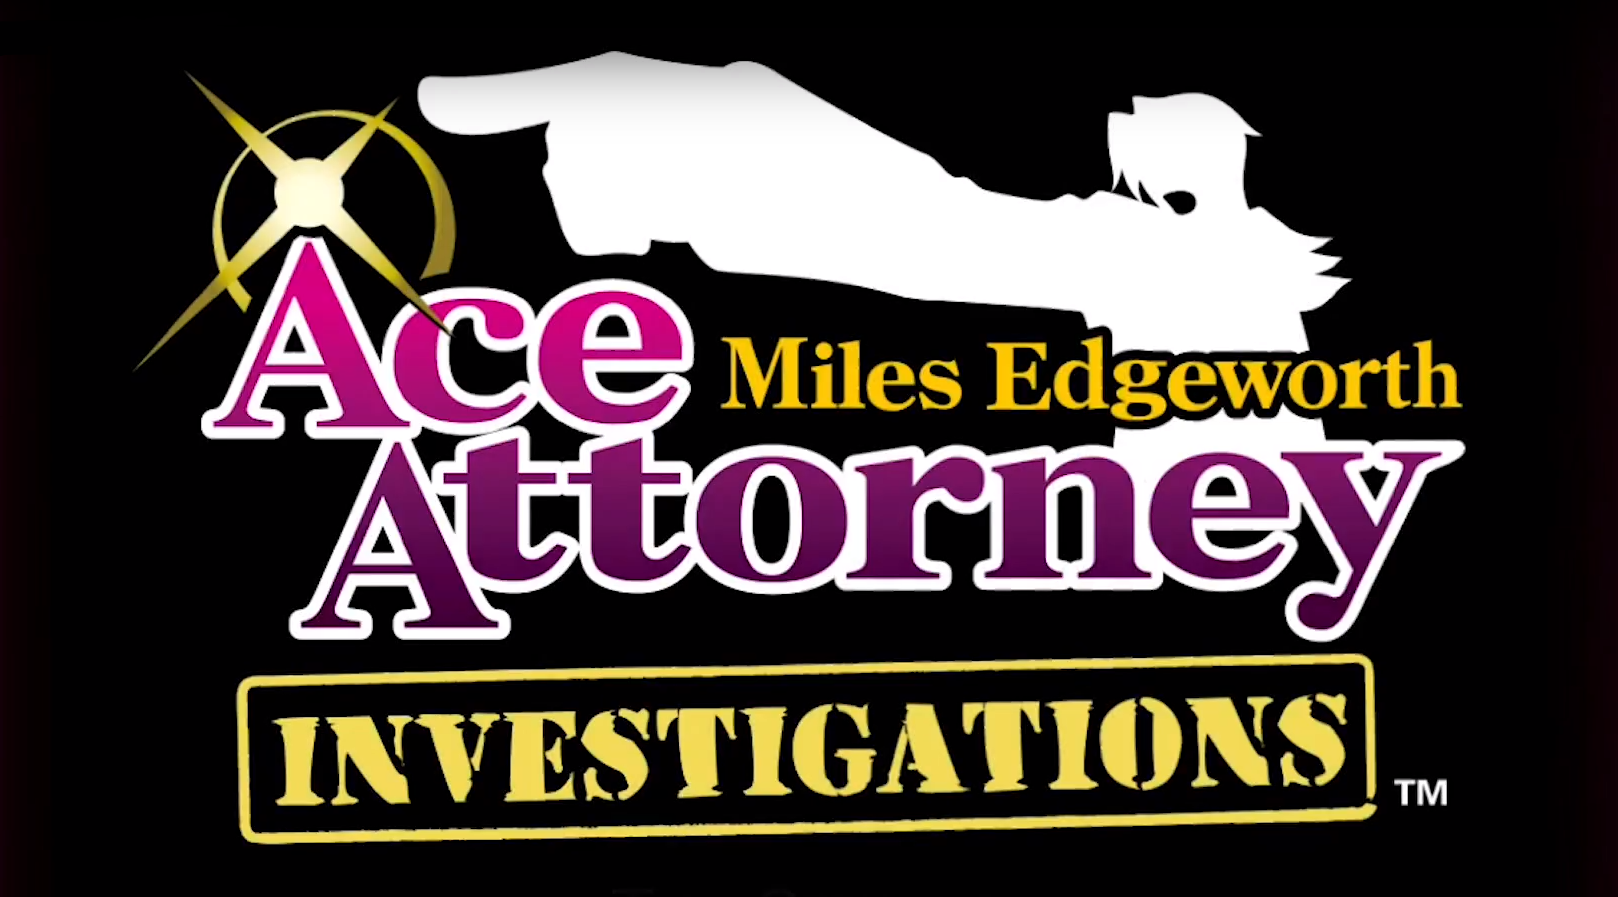 Miles Edgeworth investigations logo. Ace attorney investigations logo. Ace attorney logo. Miles edgeworth investigations